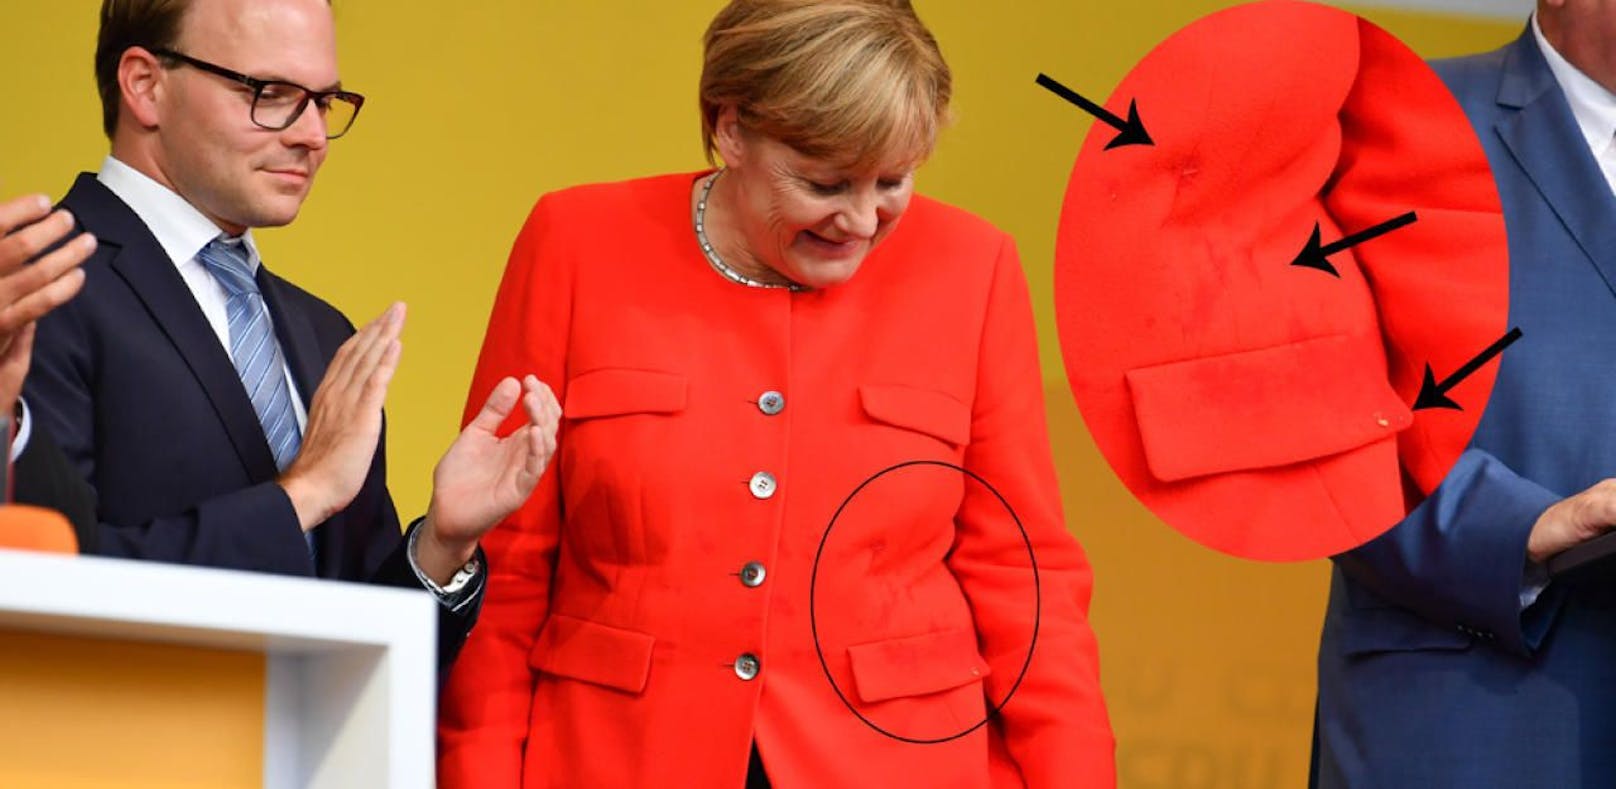 Angela Merkel mit Tomate beworfen